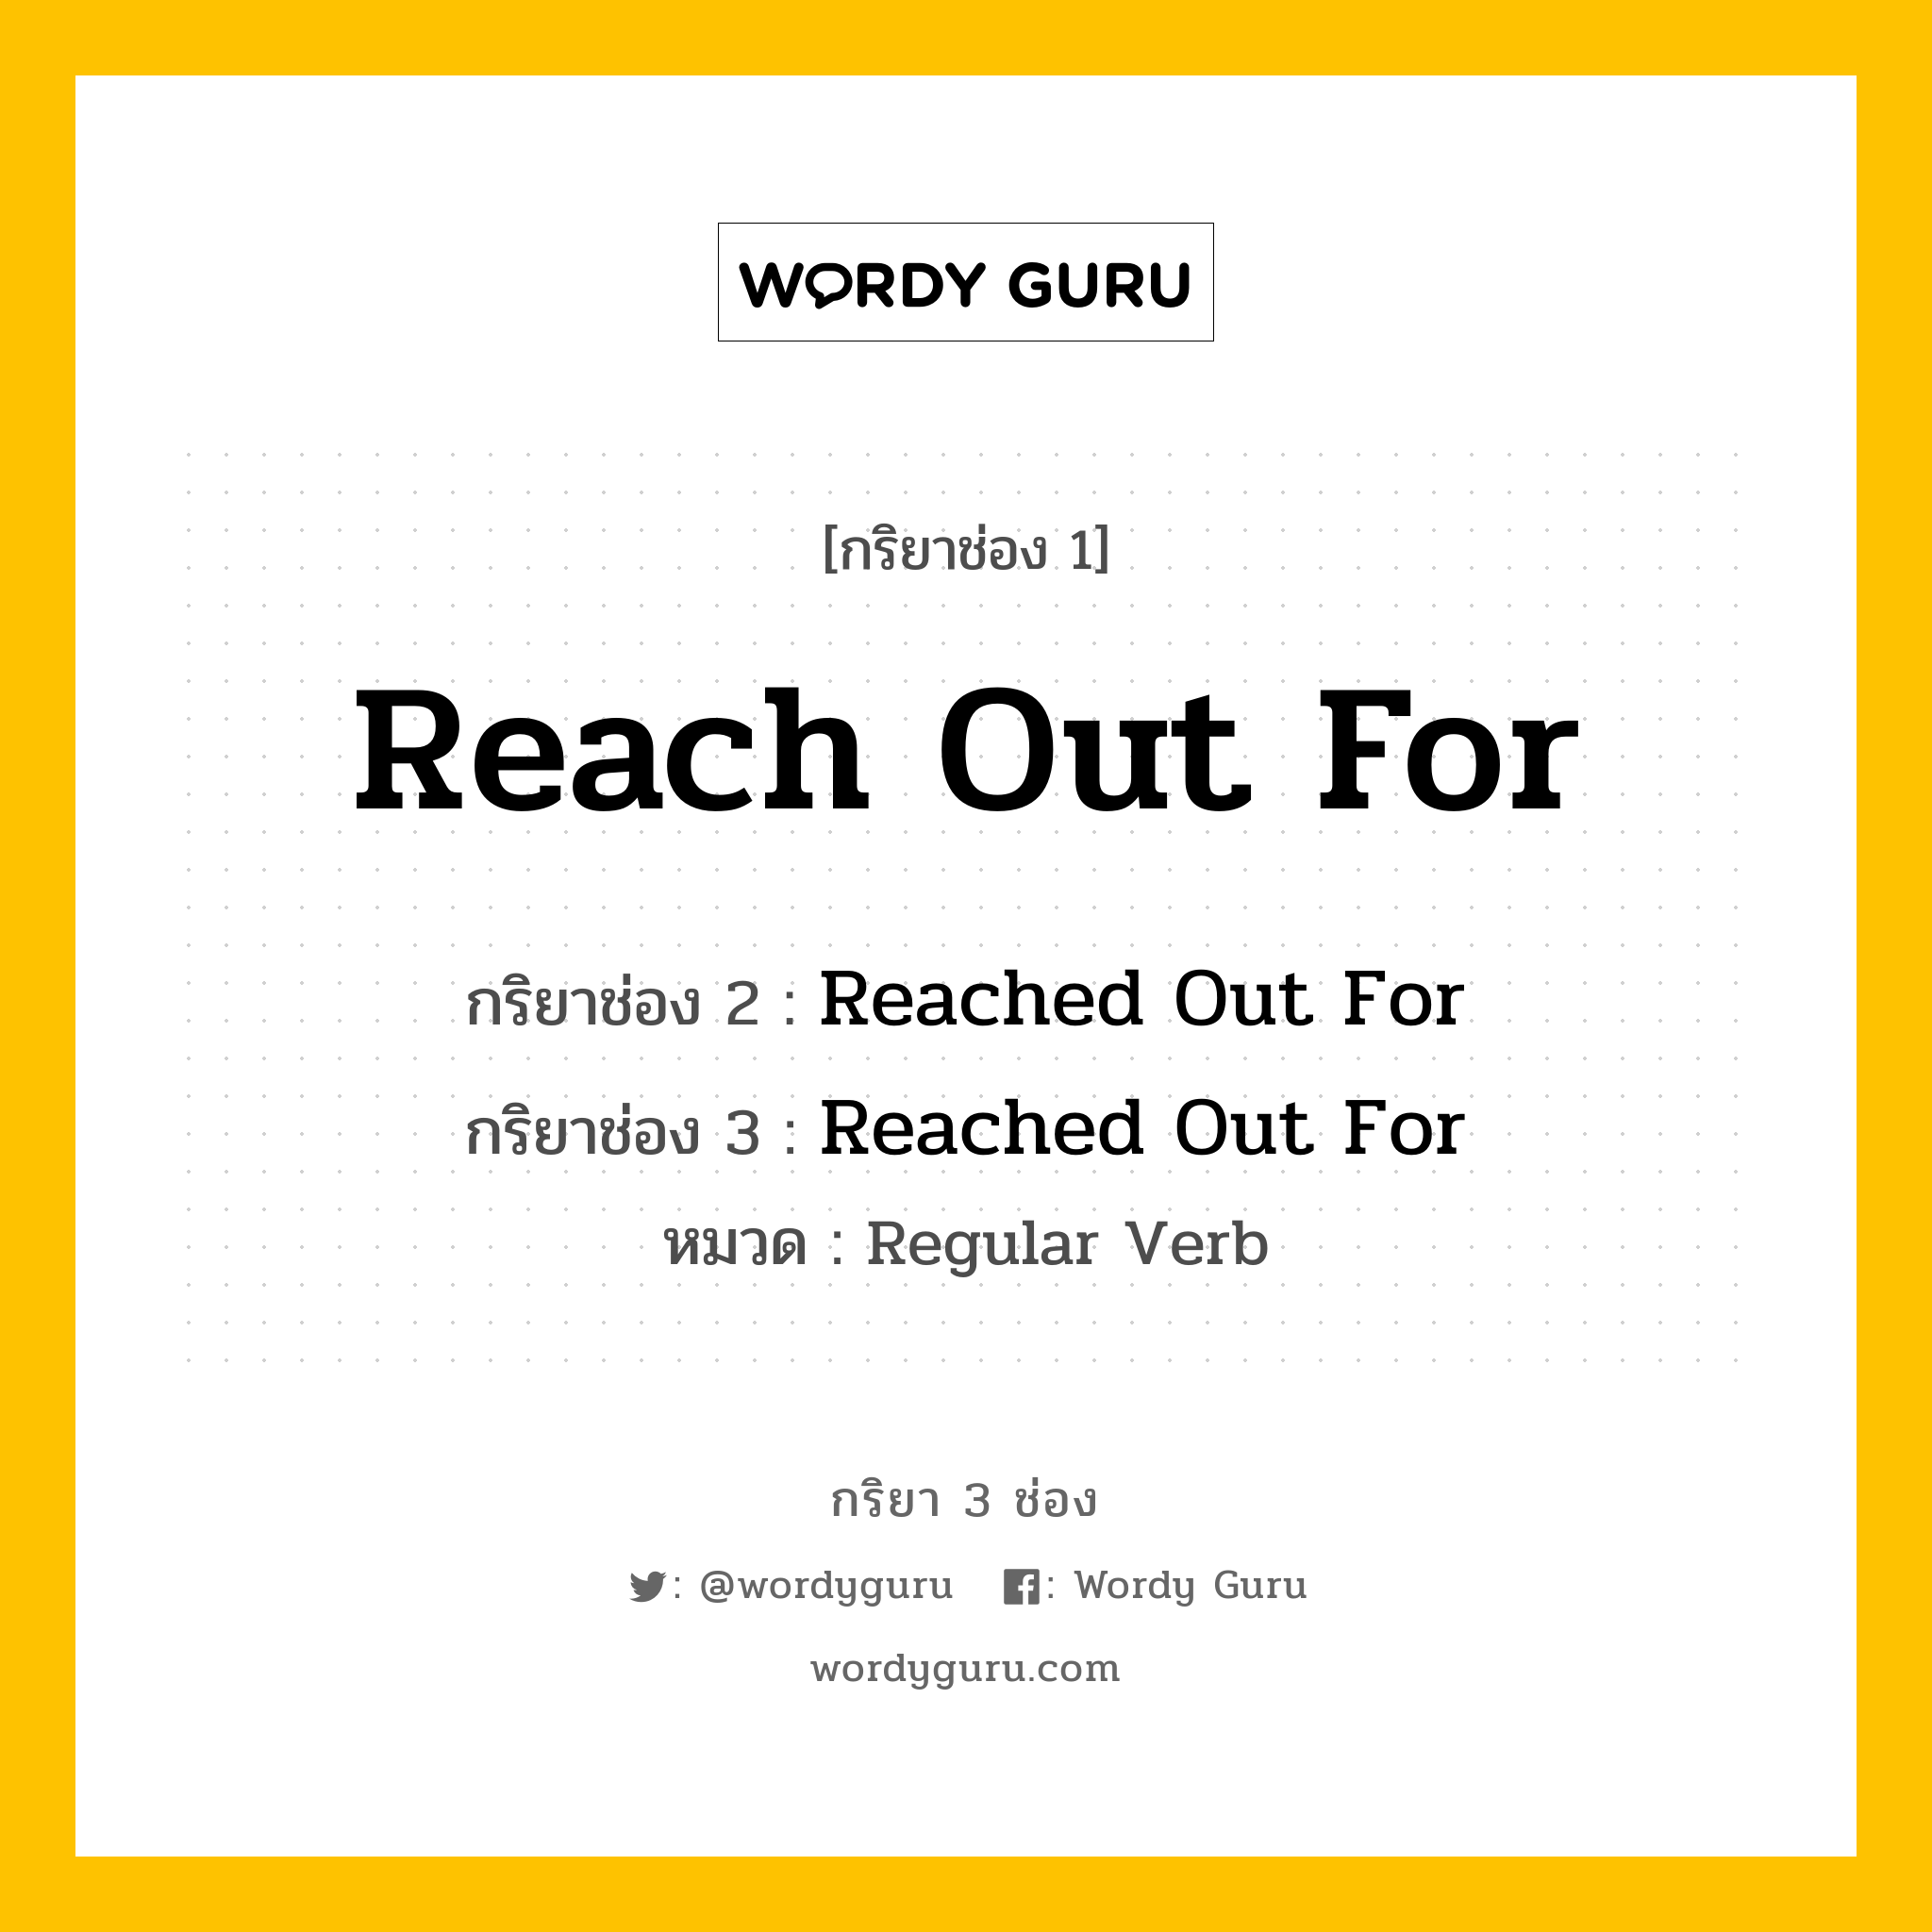 กริยา 3 ช่อง: Reach Out For ช่อง 2 Reach Out For ช่อง 3 คืออะไร, กริยาช่อง 1 Reach Out For กริยาช่อง 2 Reached Out For กริยาช่อง 3 Reached Out For หมวด Regular Verb หมวด Regular Verb